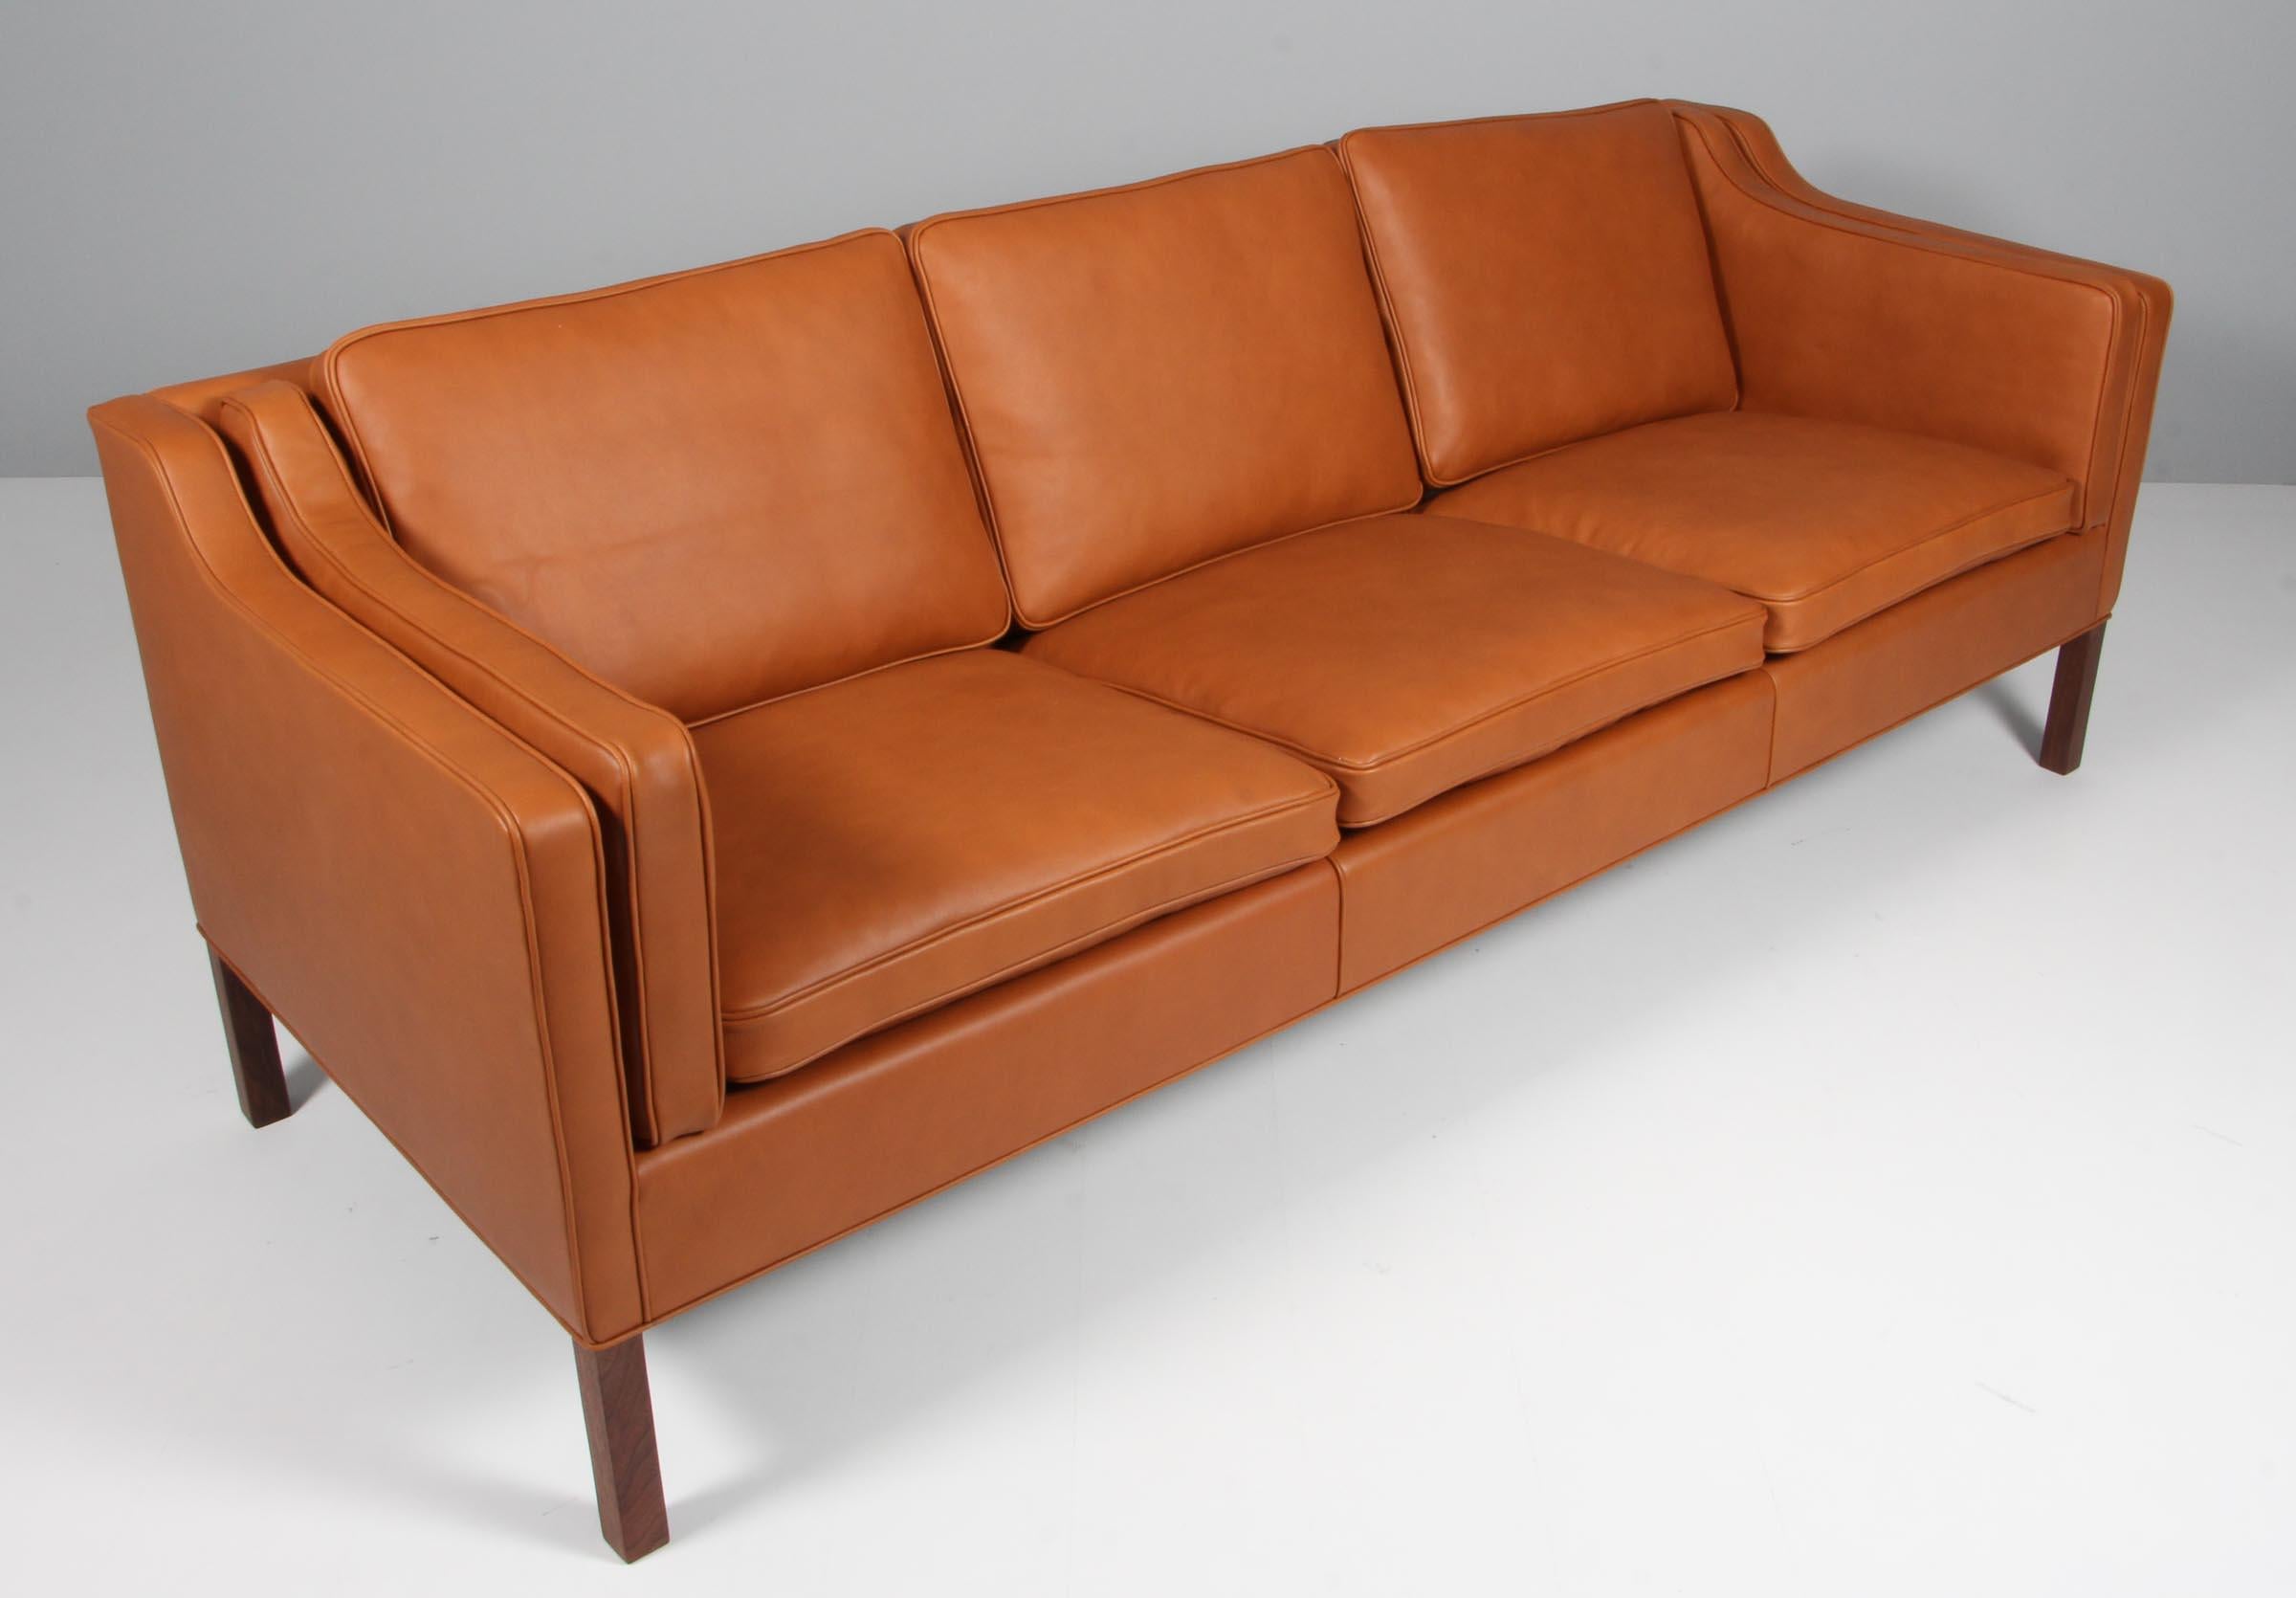 Børge Mogensen Dreisitzer-Sofa neu gepolstert mit Walnuss Elegance Anilinleder.

Beine aus Teakholz.

Modell 2213, hergestellt von Fredericia Furniture.